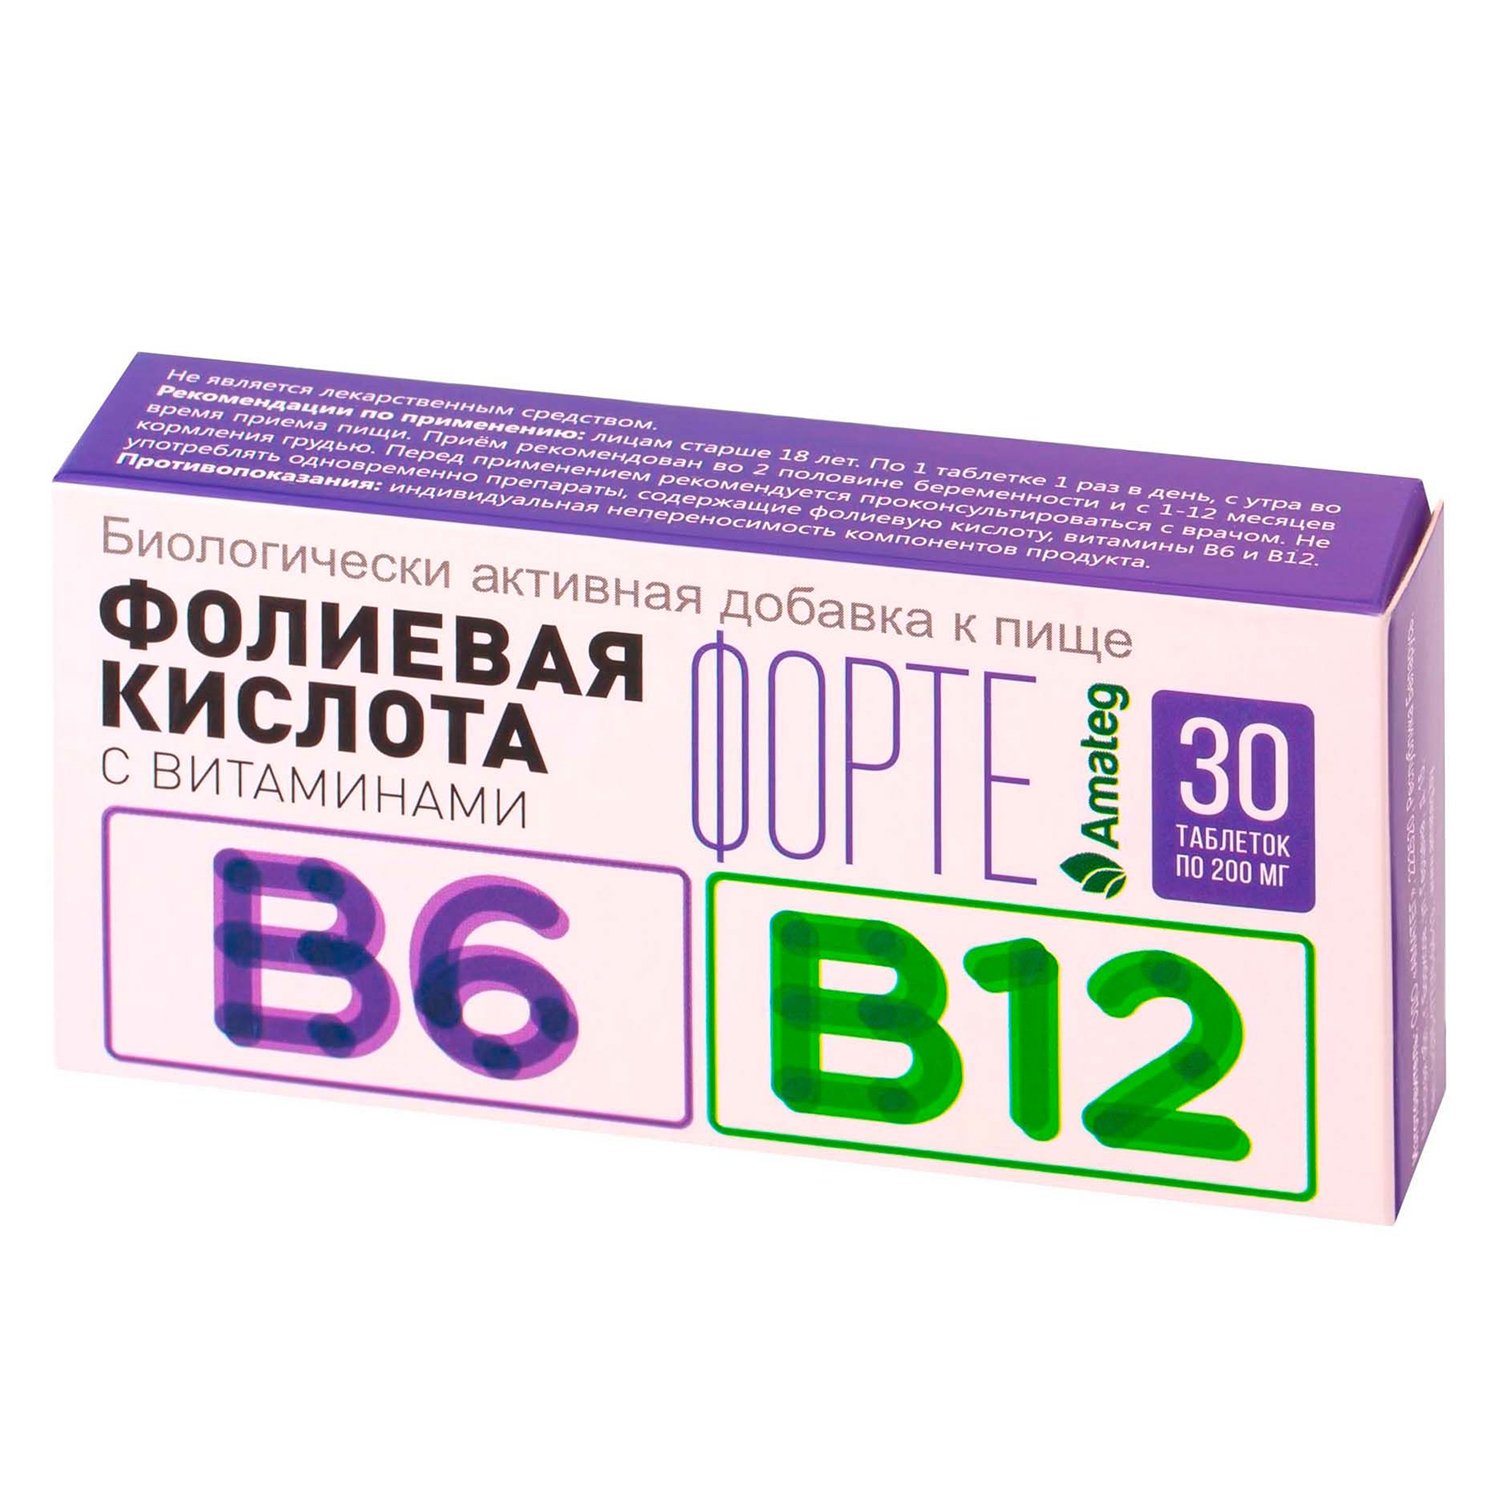 Фолиевая и б12. Фолиевая кислота с витаминами b12 и b6 таблетки. Фолиевая кислота с витаминами в12 и в6. Витамин б12 и фолиевая кислота в таблетках. Фолиевая кислота с витаминами в12 и в6 таблетки.